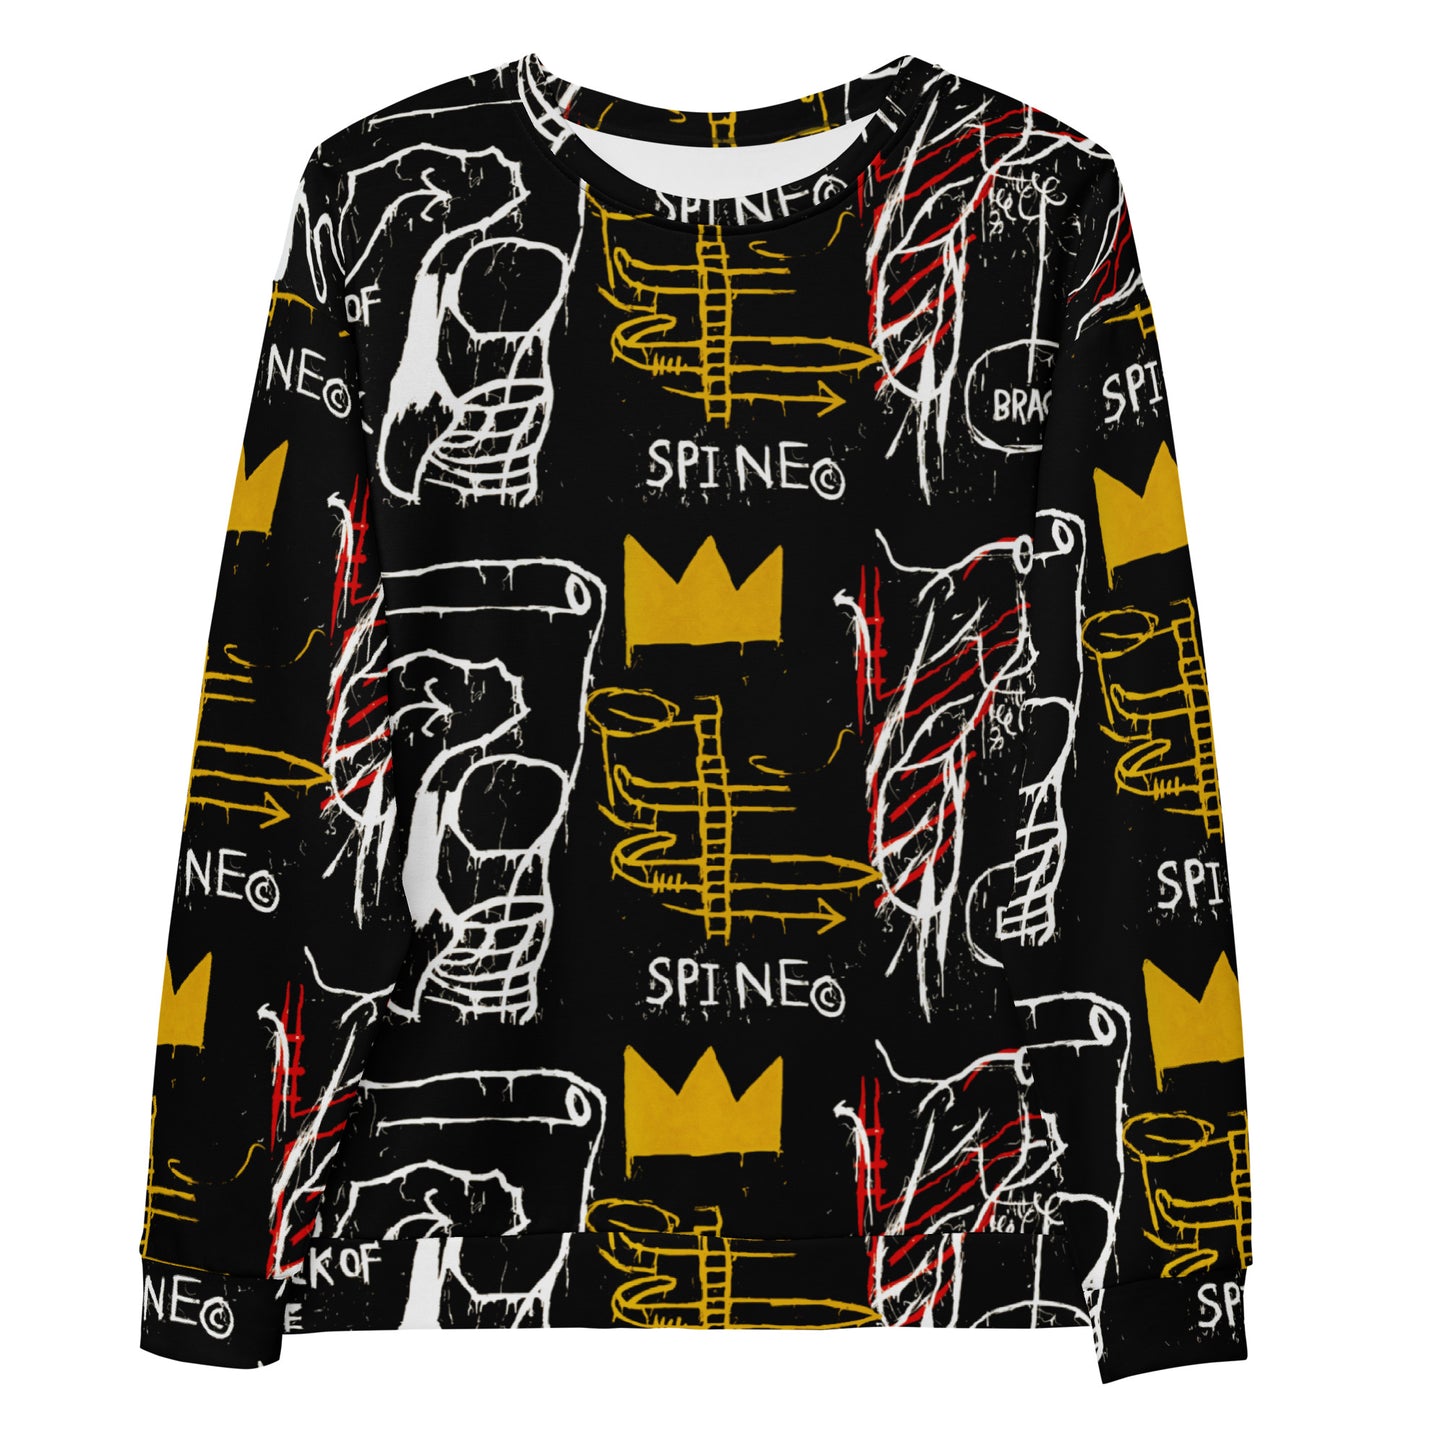 Jean-Michel Basquiat "Back of the Neck" Artwork Printed Premium Streetwear Crewneck Sweatshirt Harajuku Graffiti